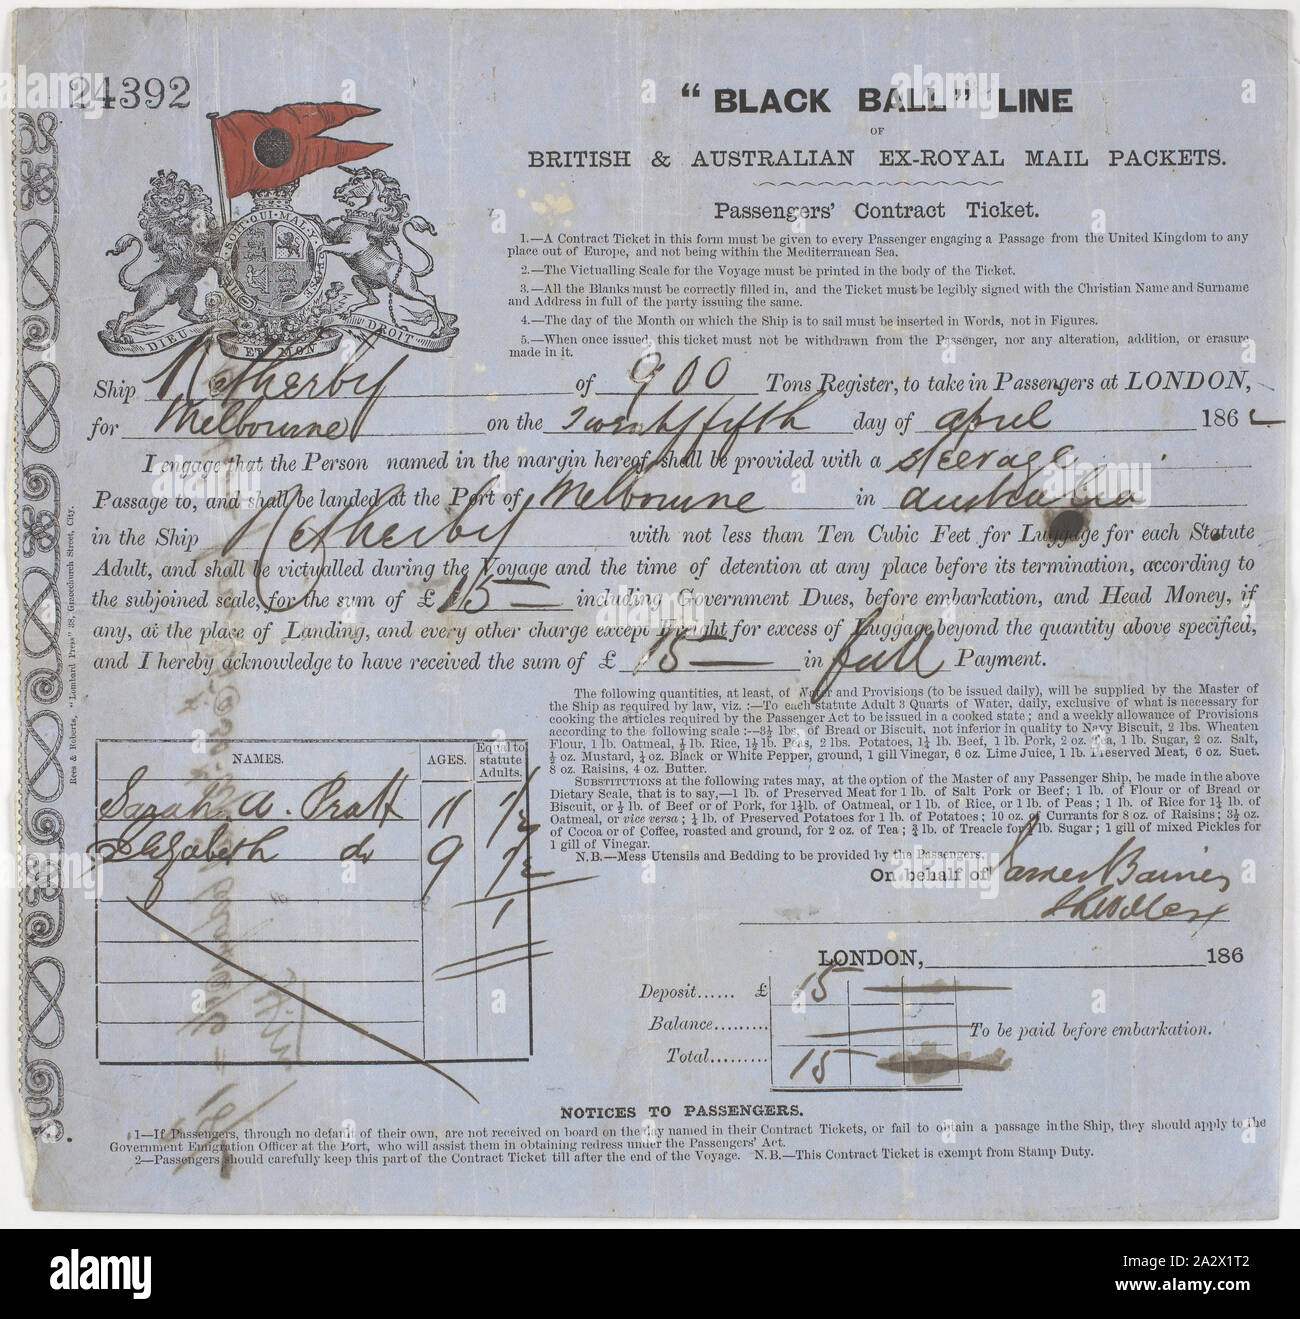 Contrat passager - Ticket délivré à Sarah & Elizabeth Pratt, Netherby',  'Black Ball Line, London, 1862, contrat passager billet pour Elizabeth  Pratt's deux filles Sarah (11 ans) et Elizabeth (de 9) à